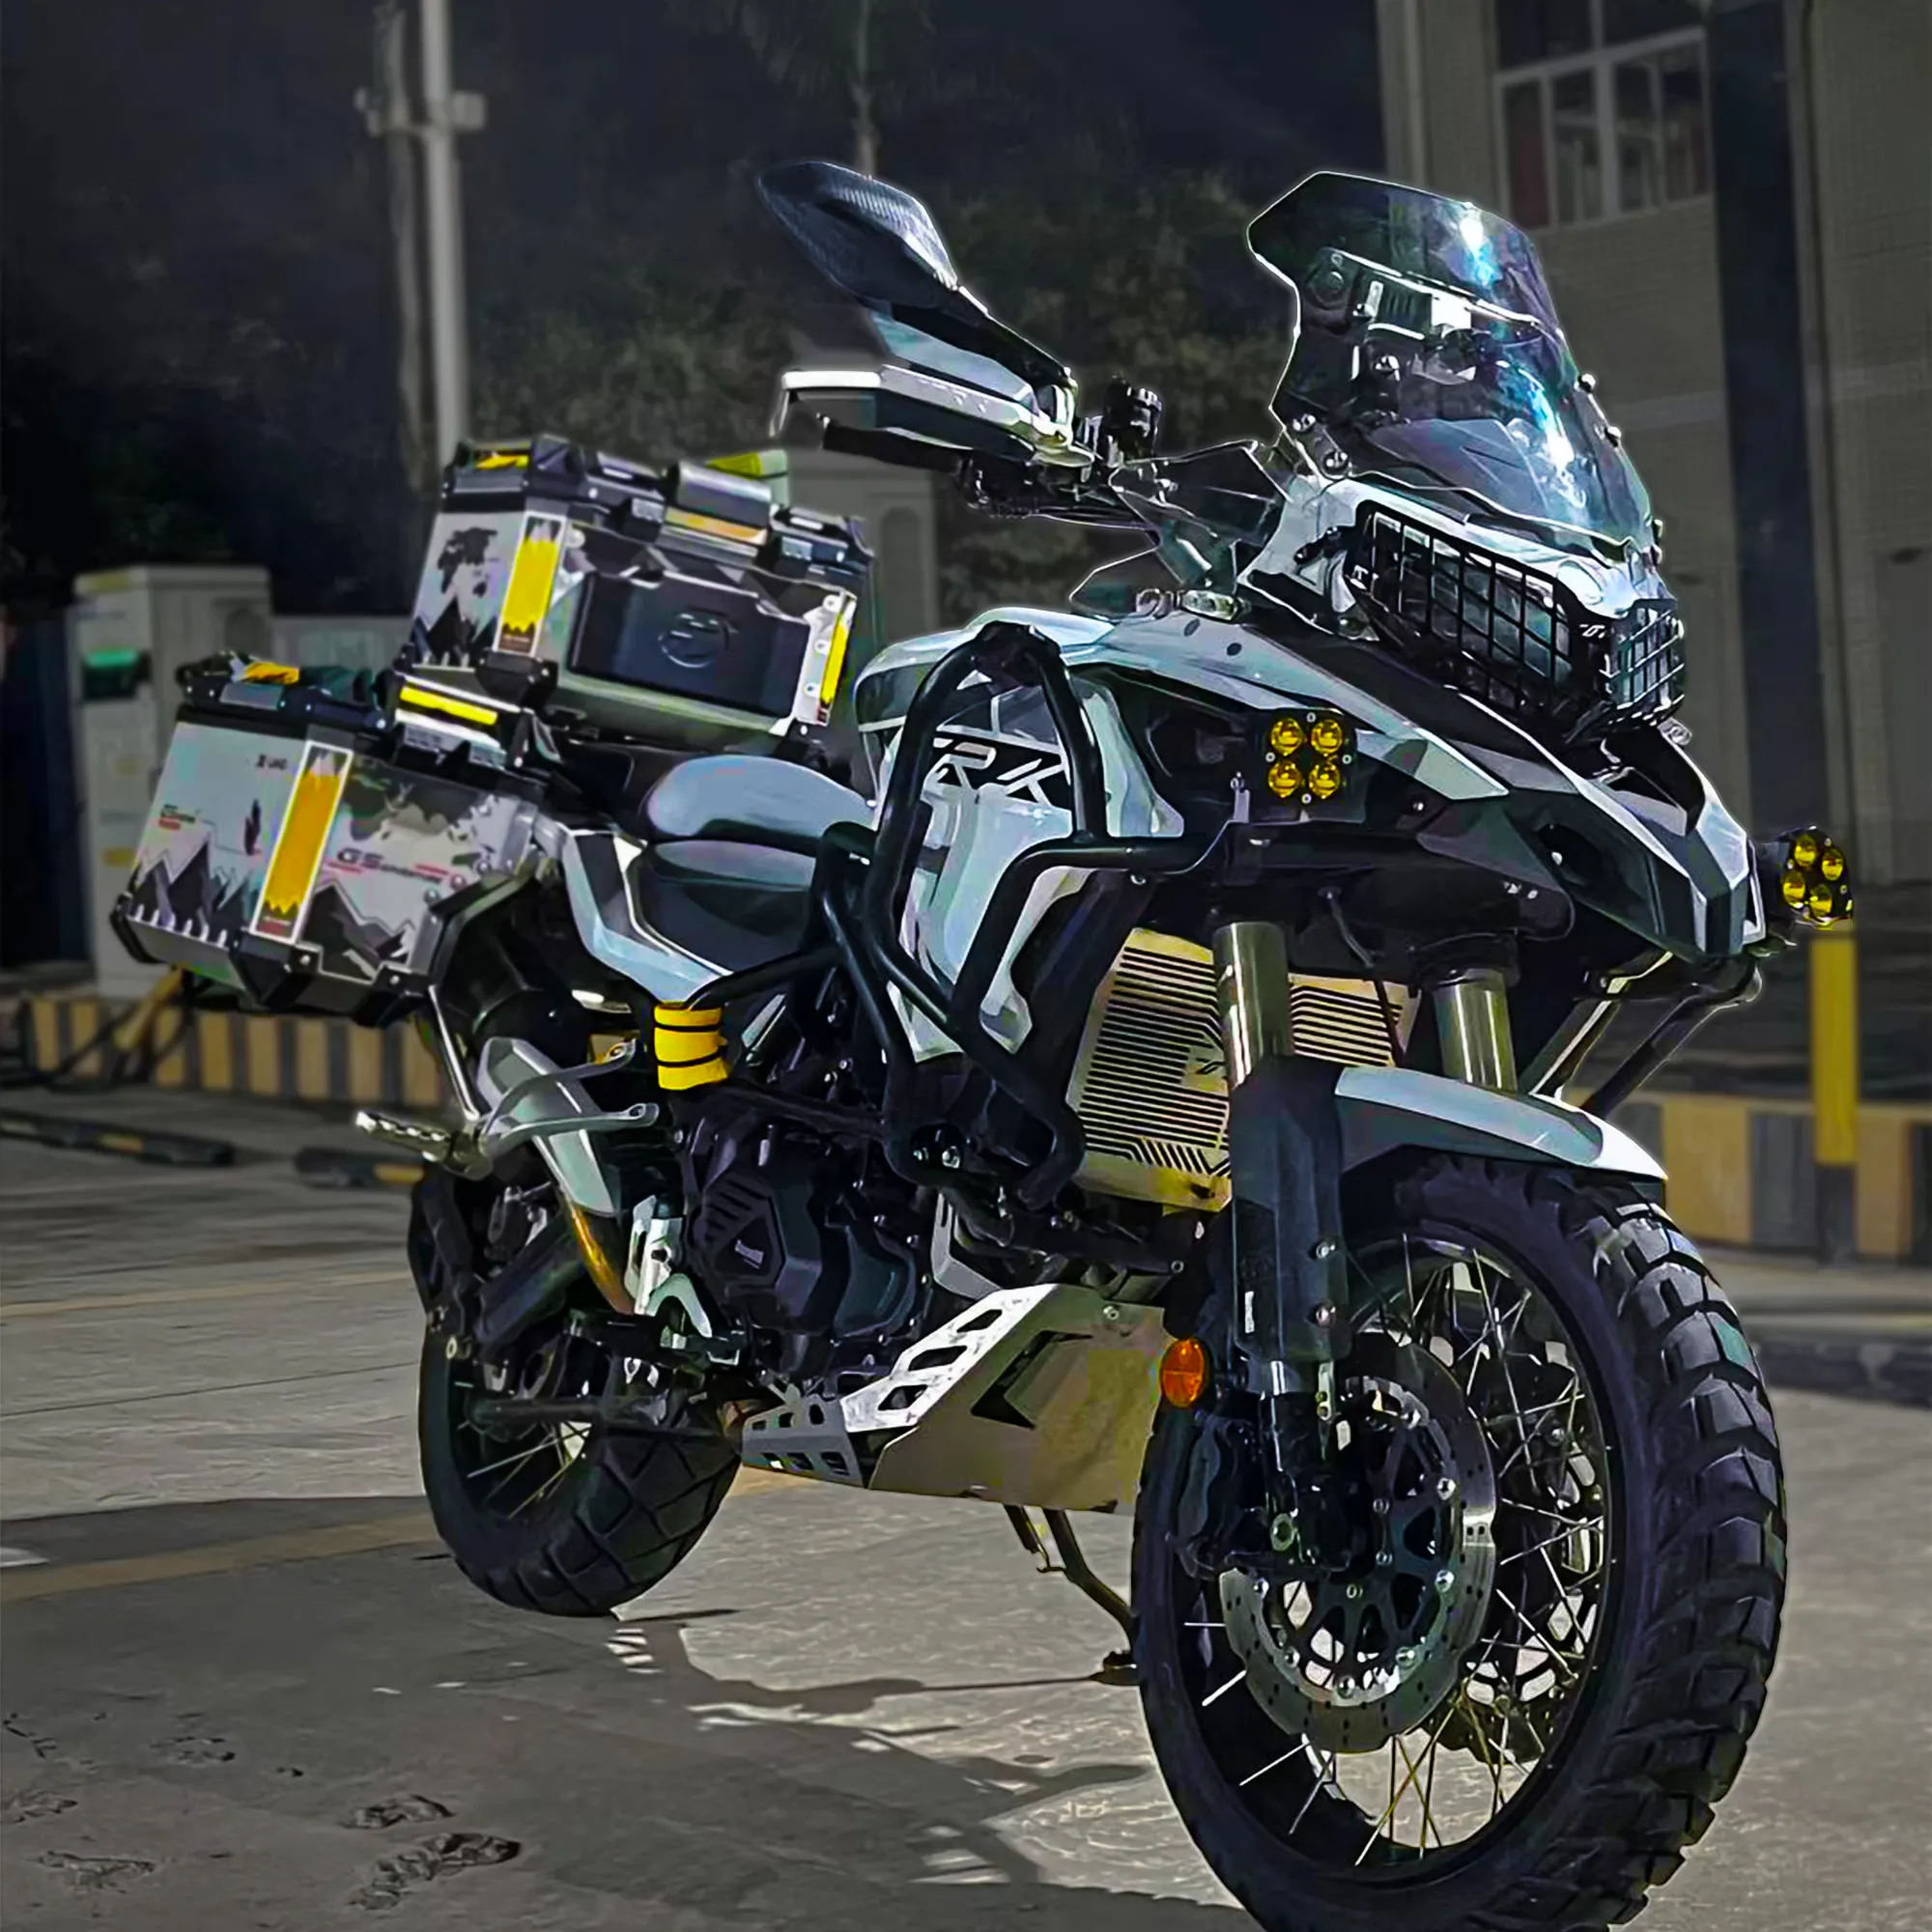 دراجة نارية جديدة للبالغين تدعم الوقود كبيرة رياضية وتتميز بحجم كبير ودفع بدواسة تعمل بالوقود بقوة 500 سي سي موديل Adv ECU-bosch إصدار عام 2024